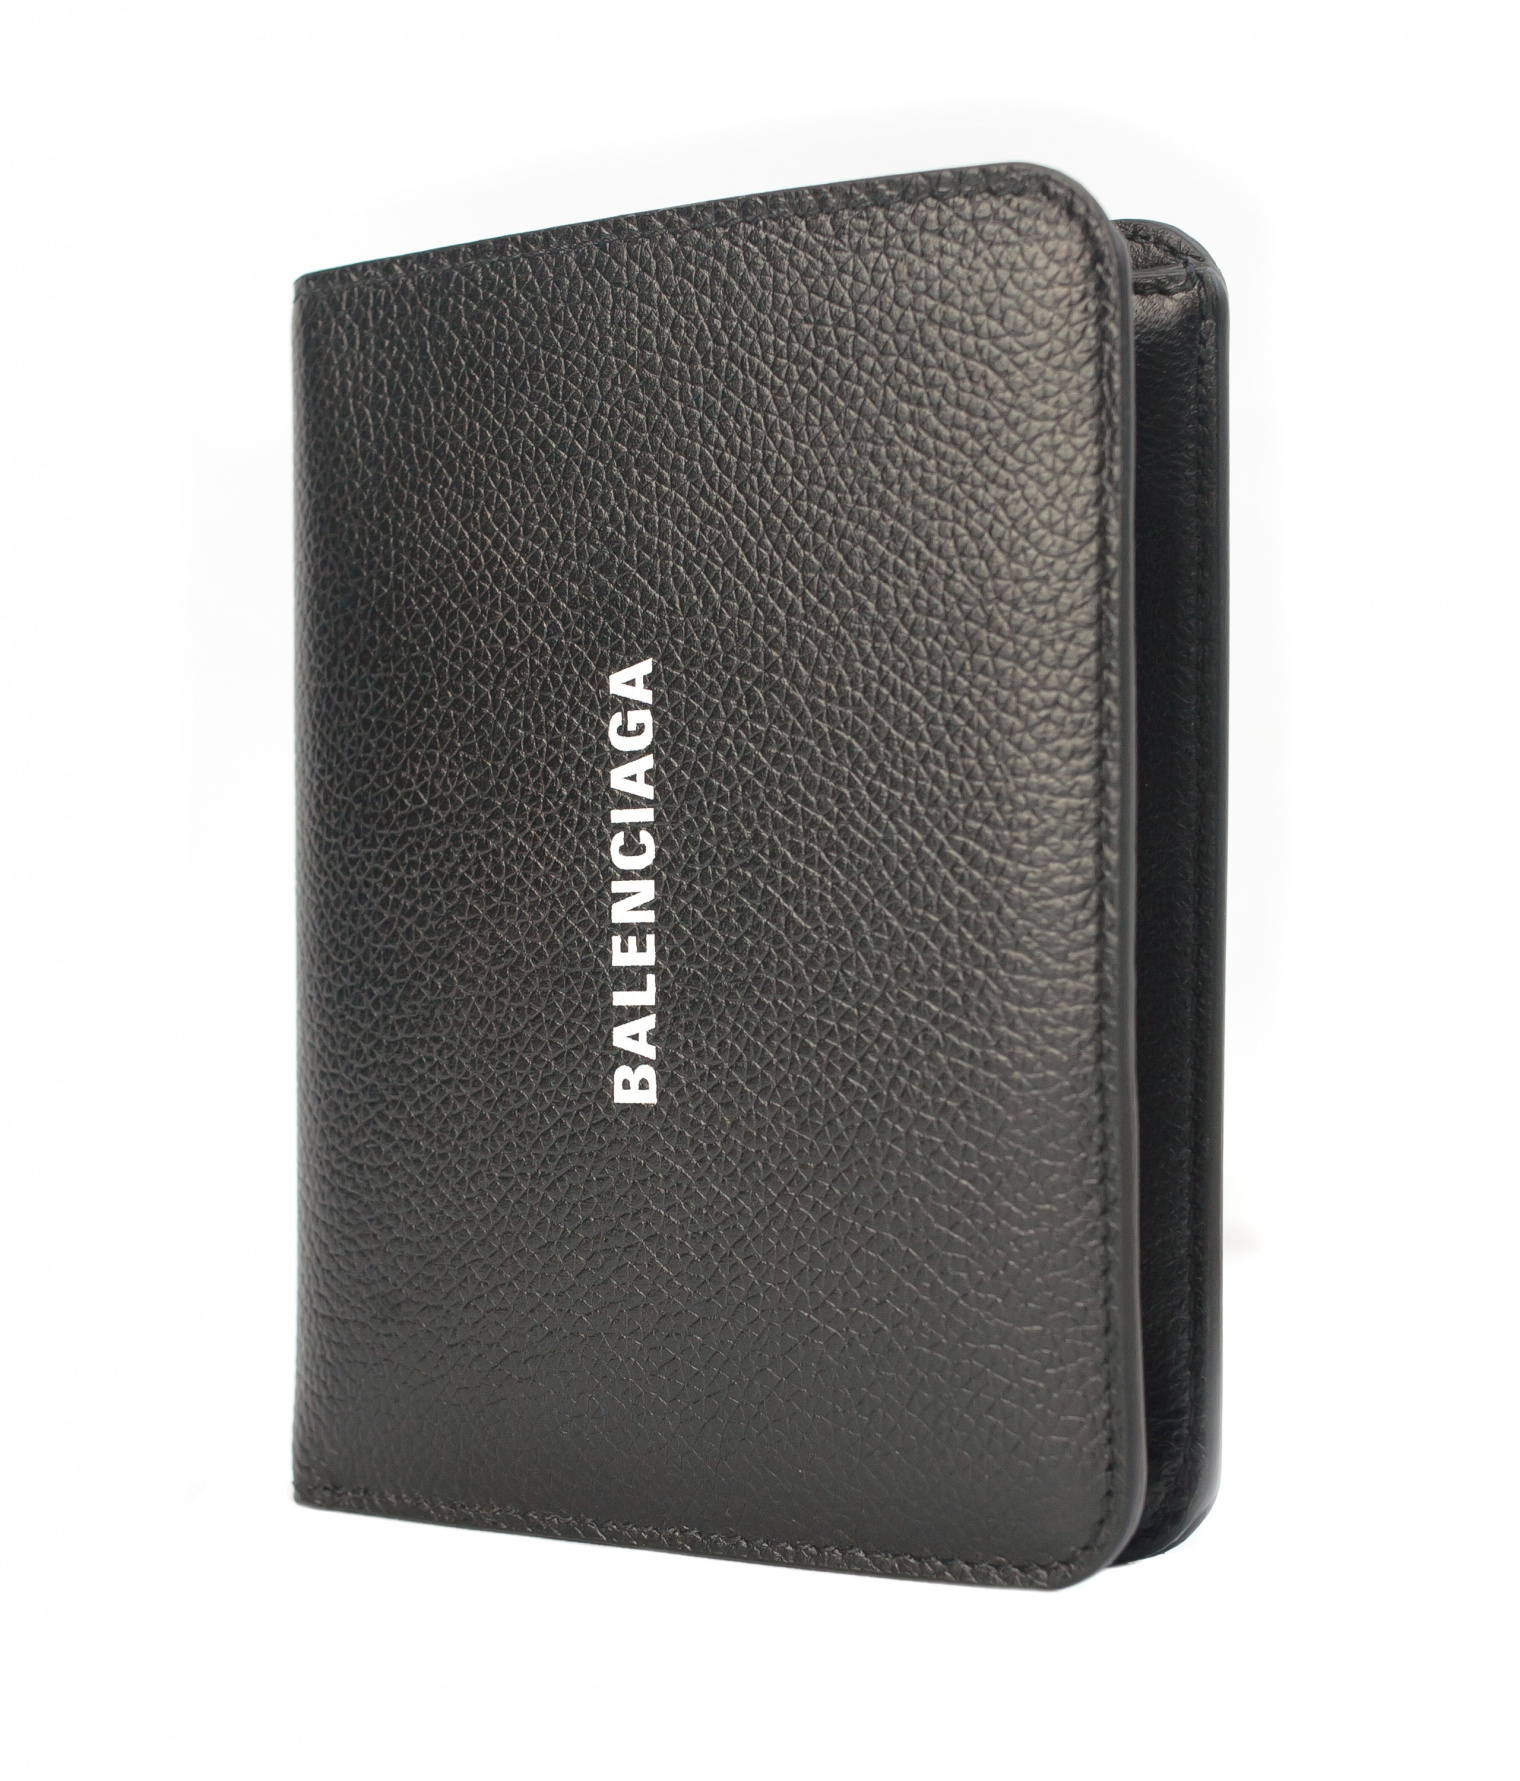 Balenciaga Black Leather Cash Wallet